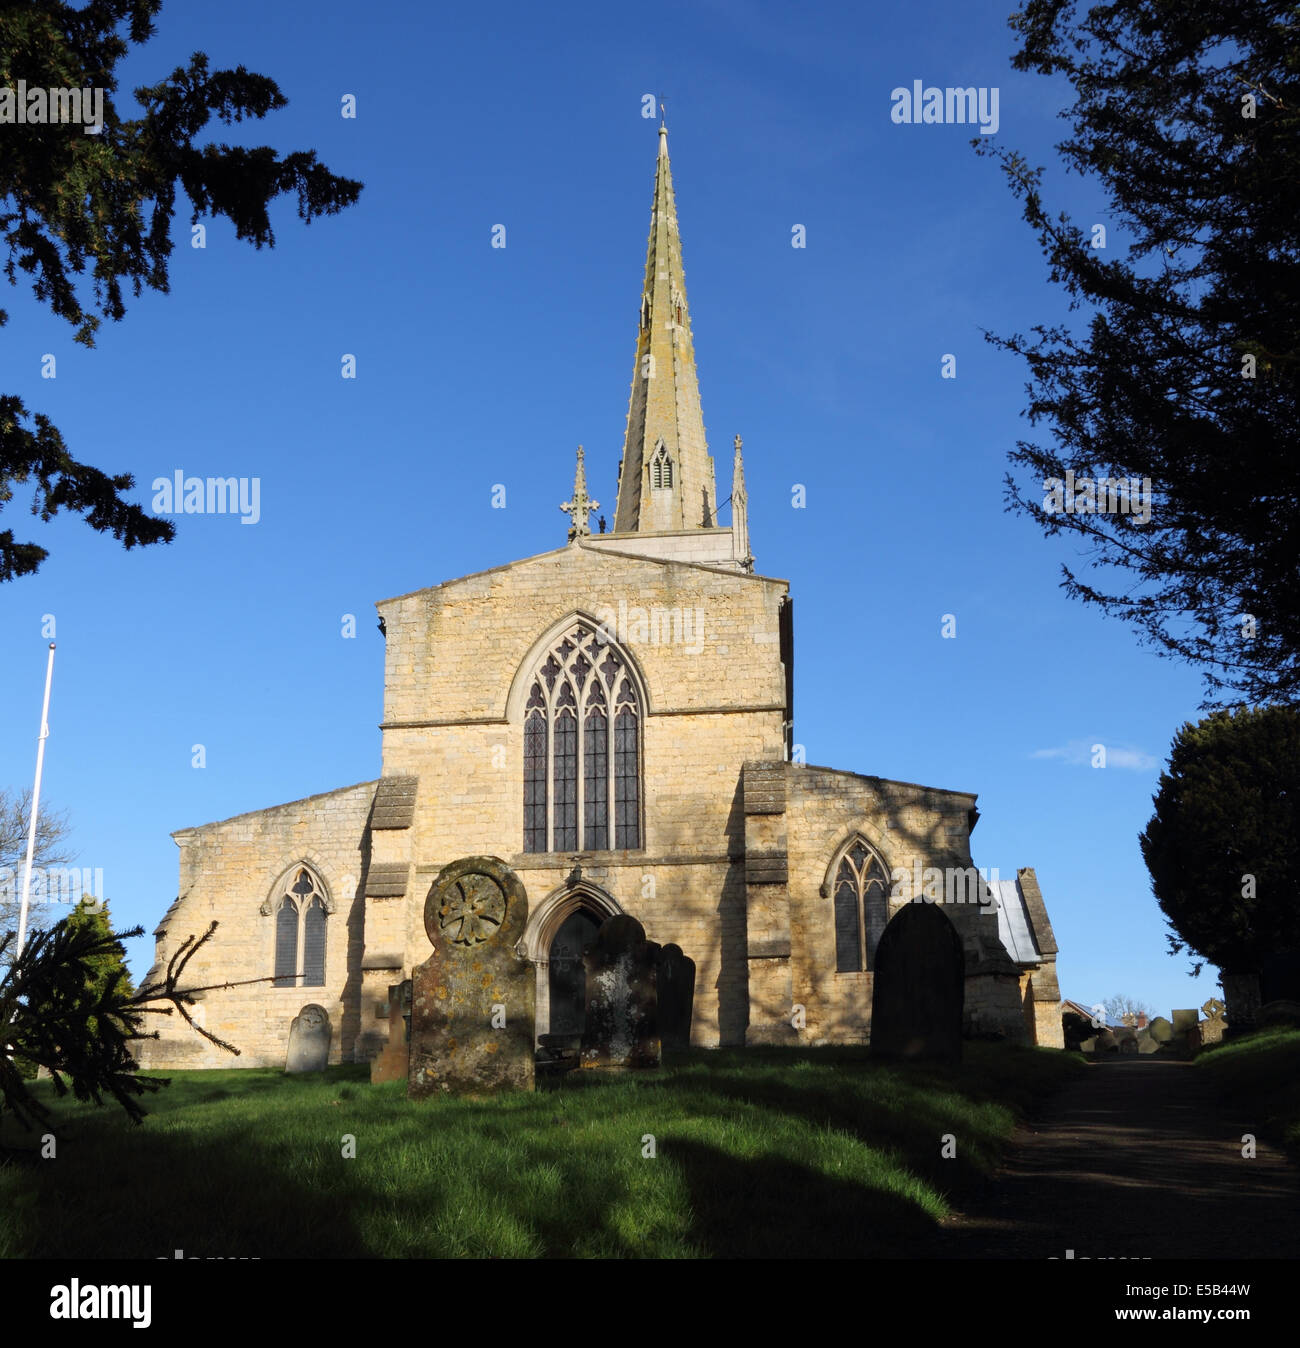 L'église St Mary Magdalene, Waltham sur les plateaux, Melton Mowbray, Leicestershire, Angleterre Banque D'Images